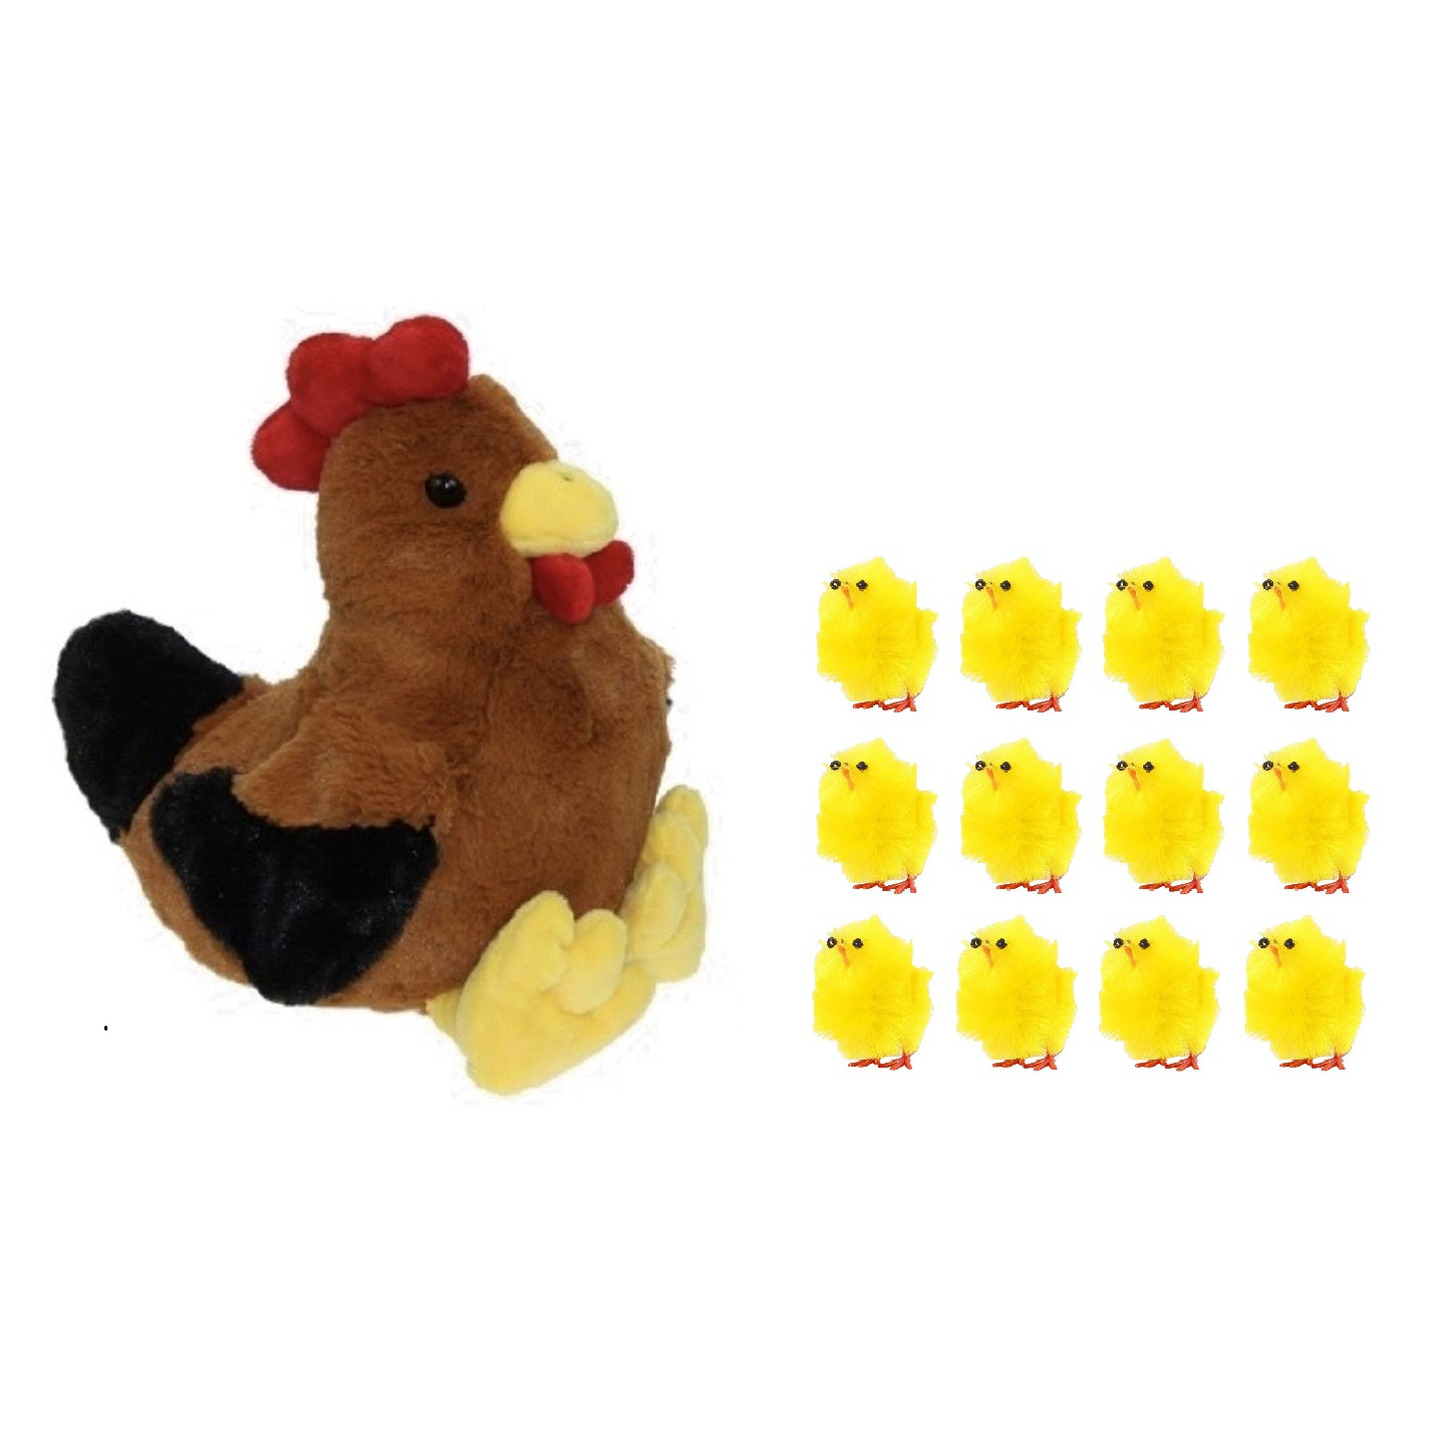 Pluche bruine kippen-hanen knuffel van 25 cm met 12x stuks mini kuikentjes 3 cm